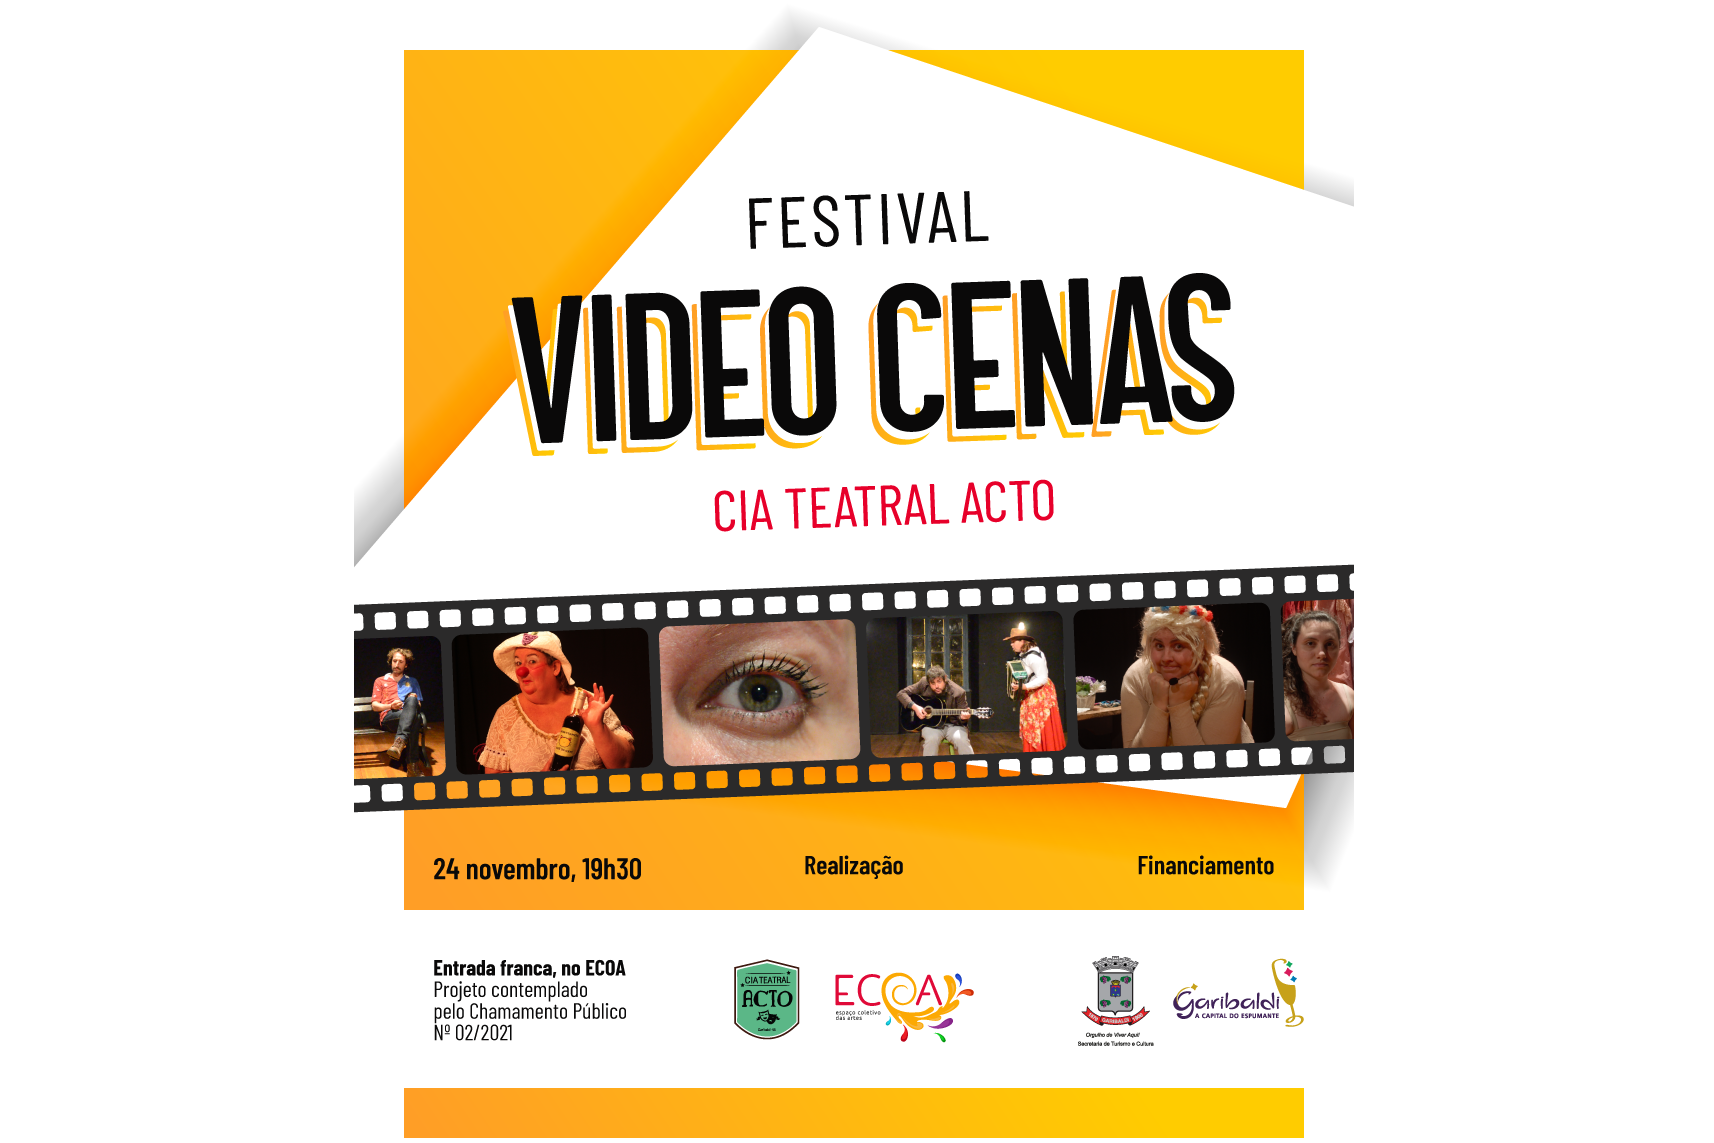 Foto Cia Acto apresenta Festival Vídeo Cenas